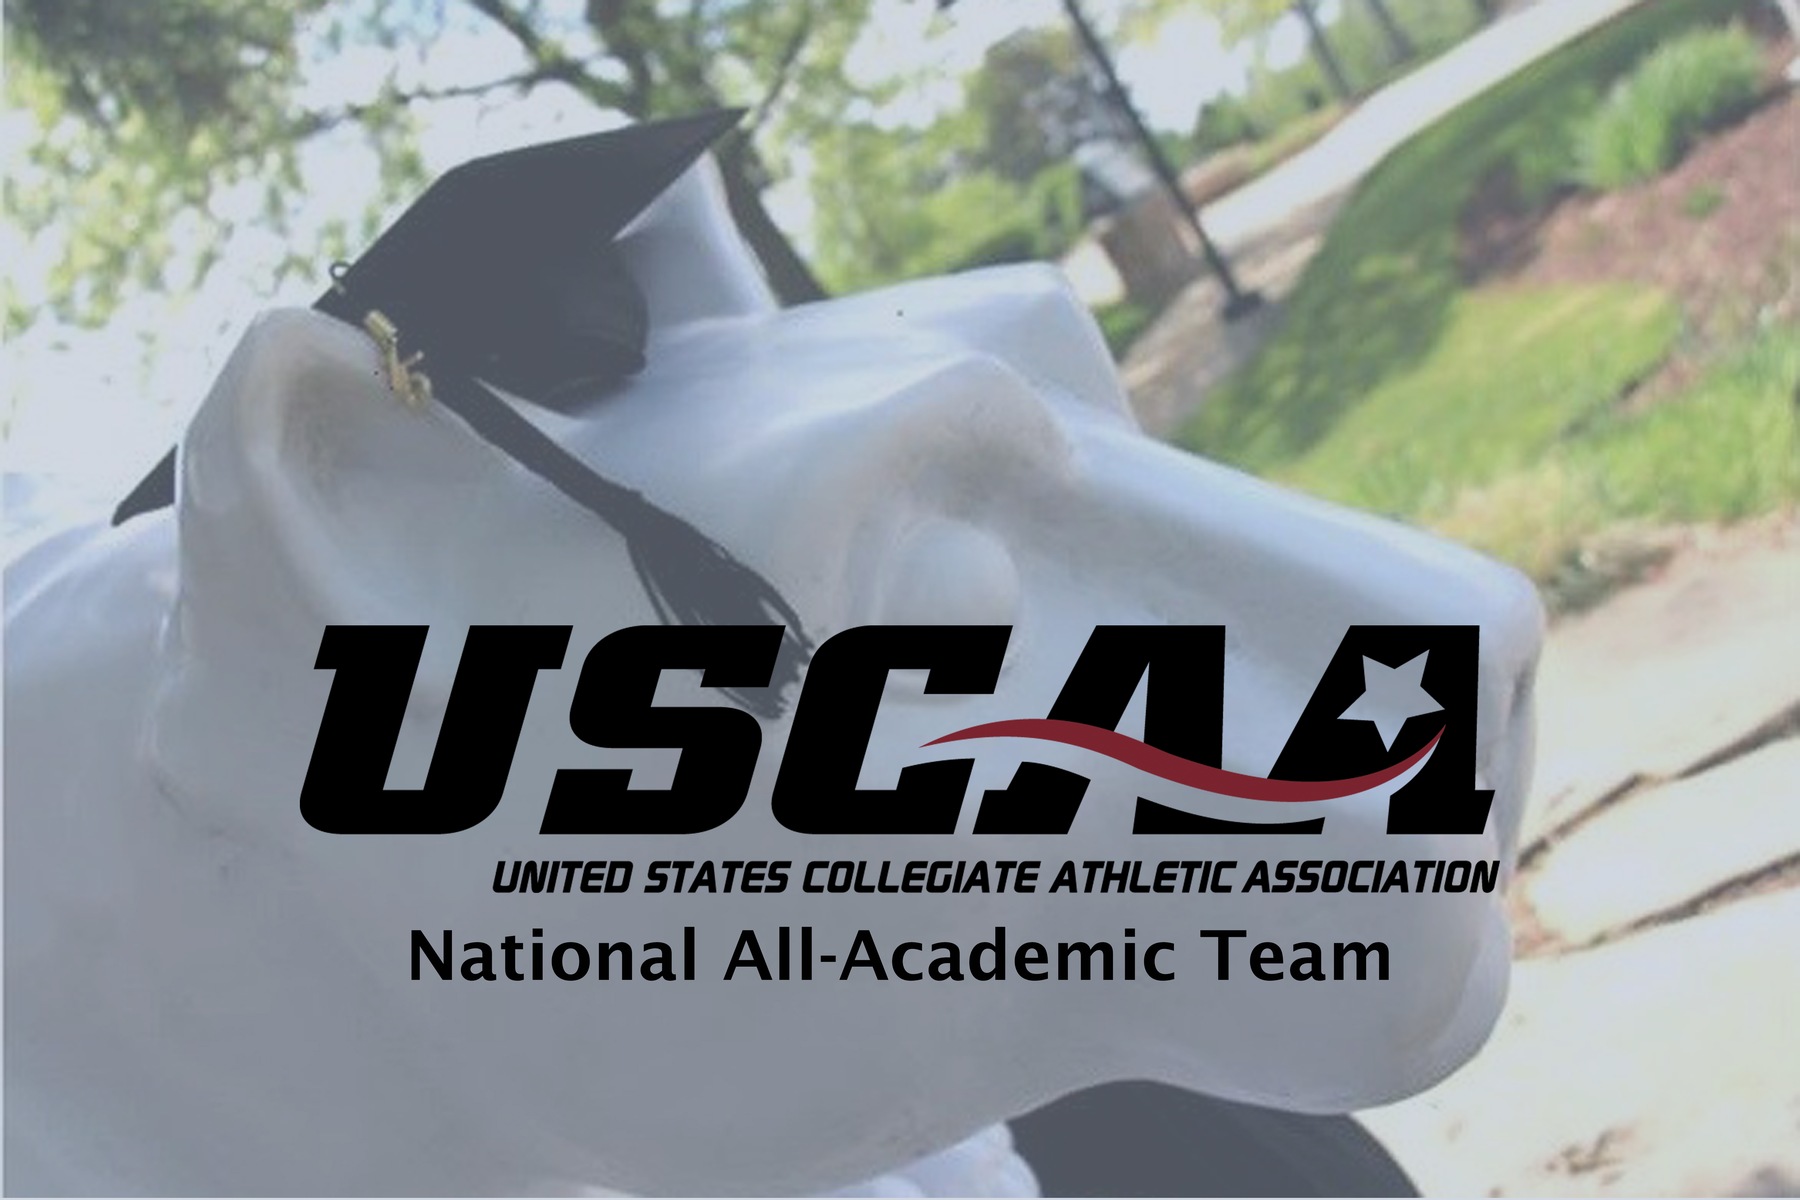 USCAA National All-Academic Team